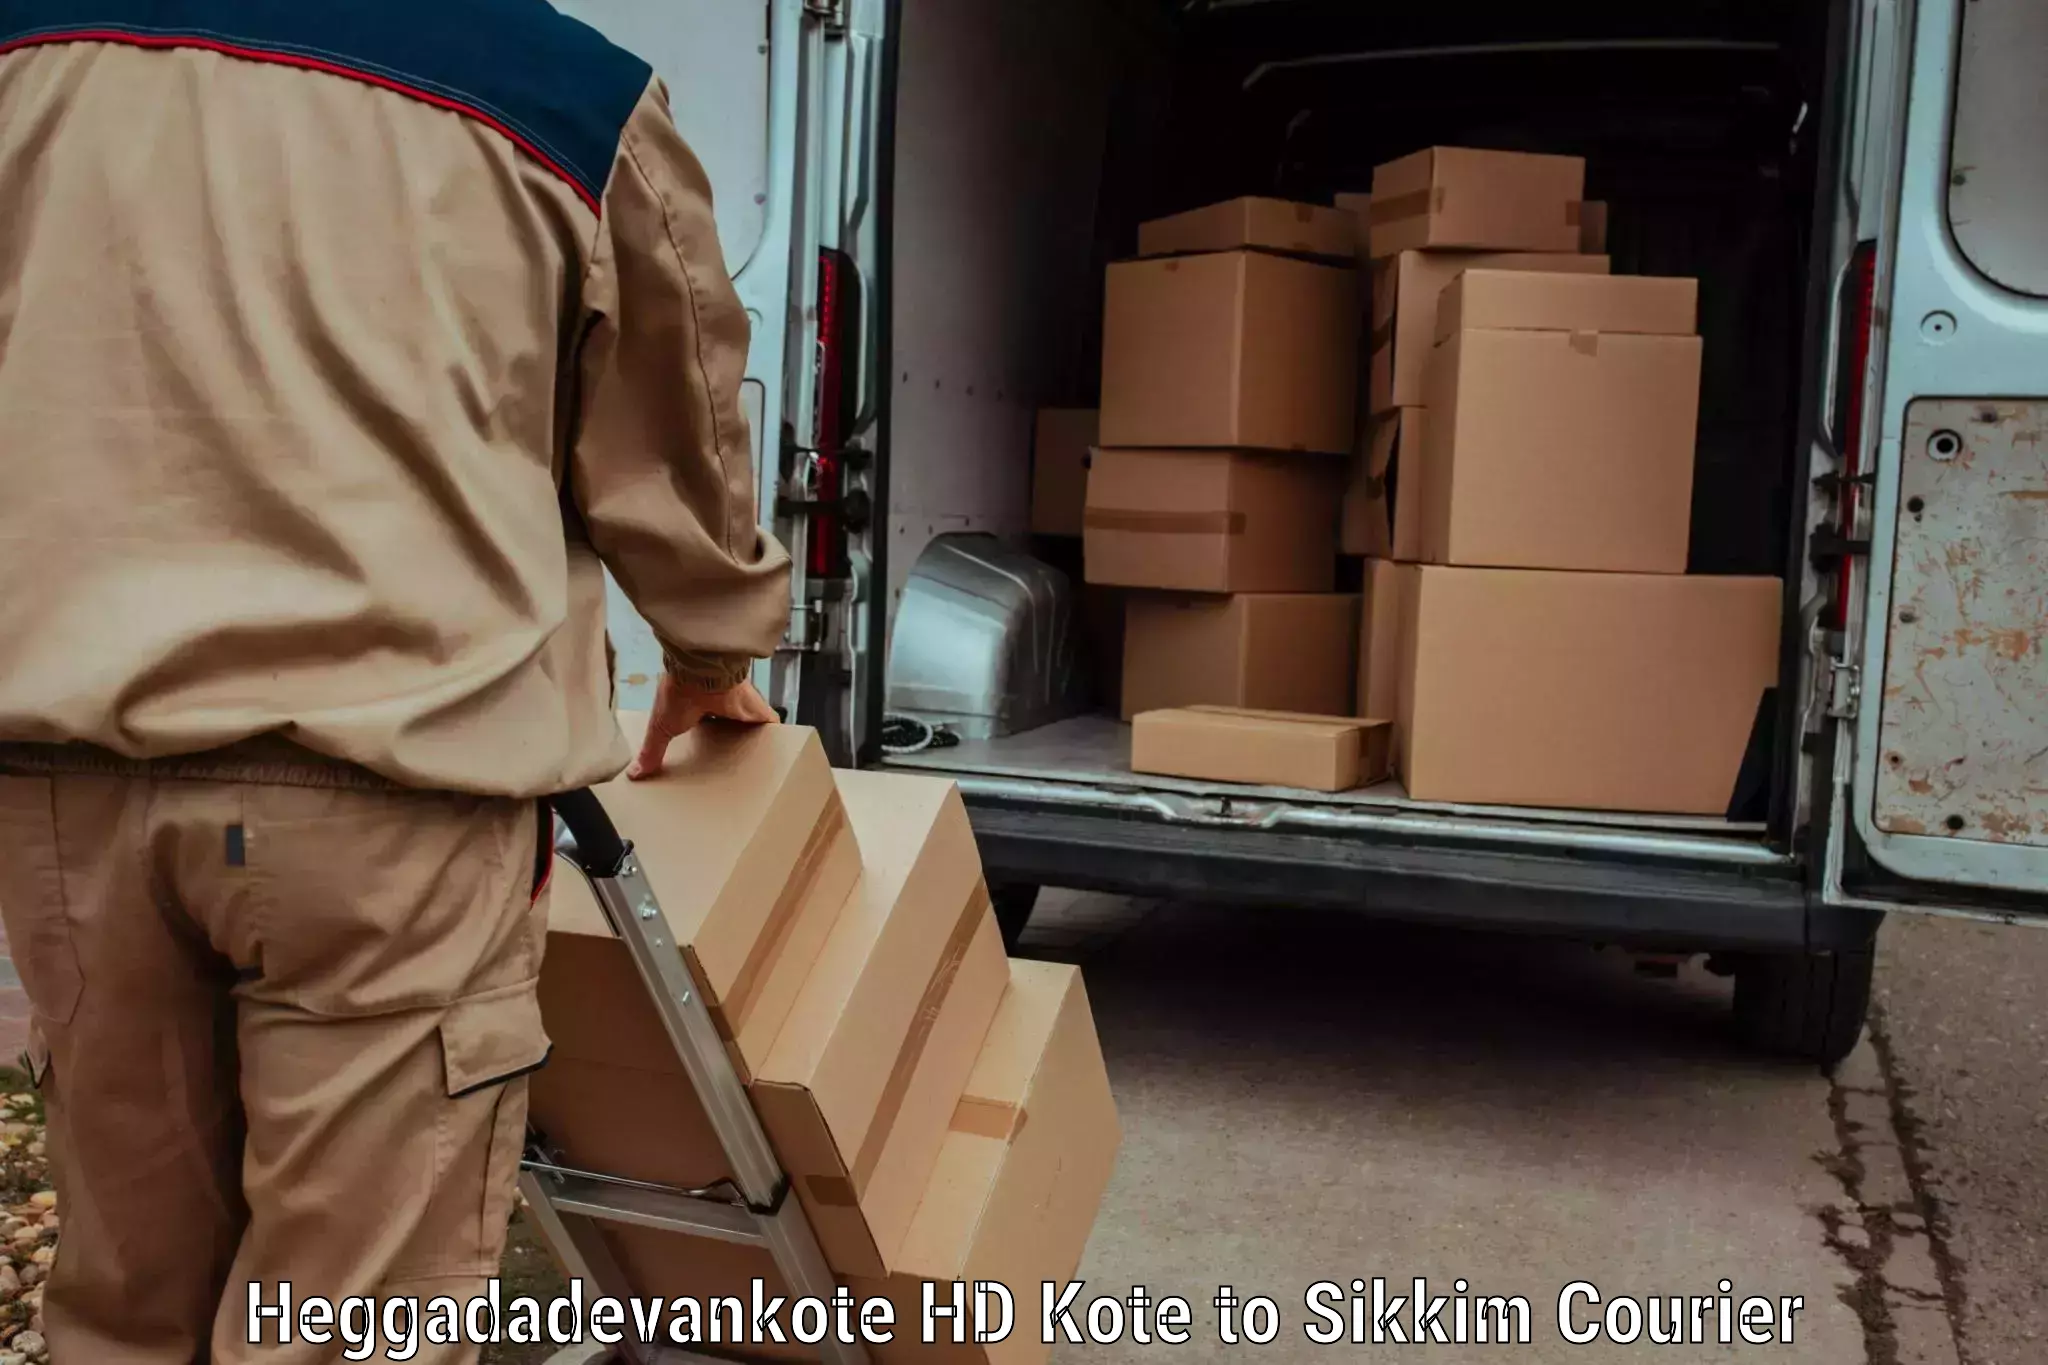 Local delivery service Heggadadevankote HD Kote to Gangtok